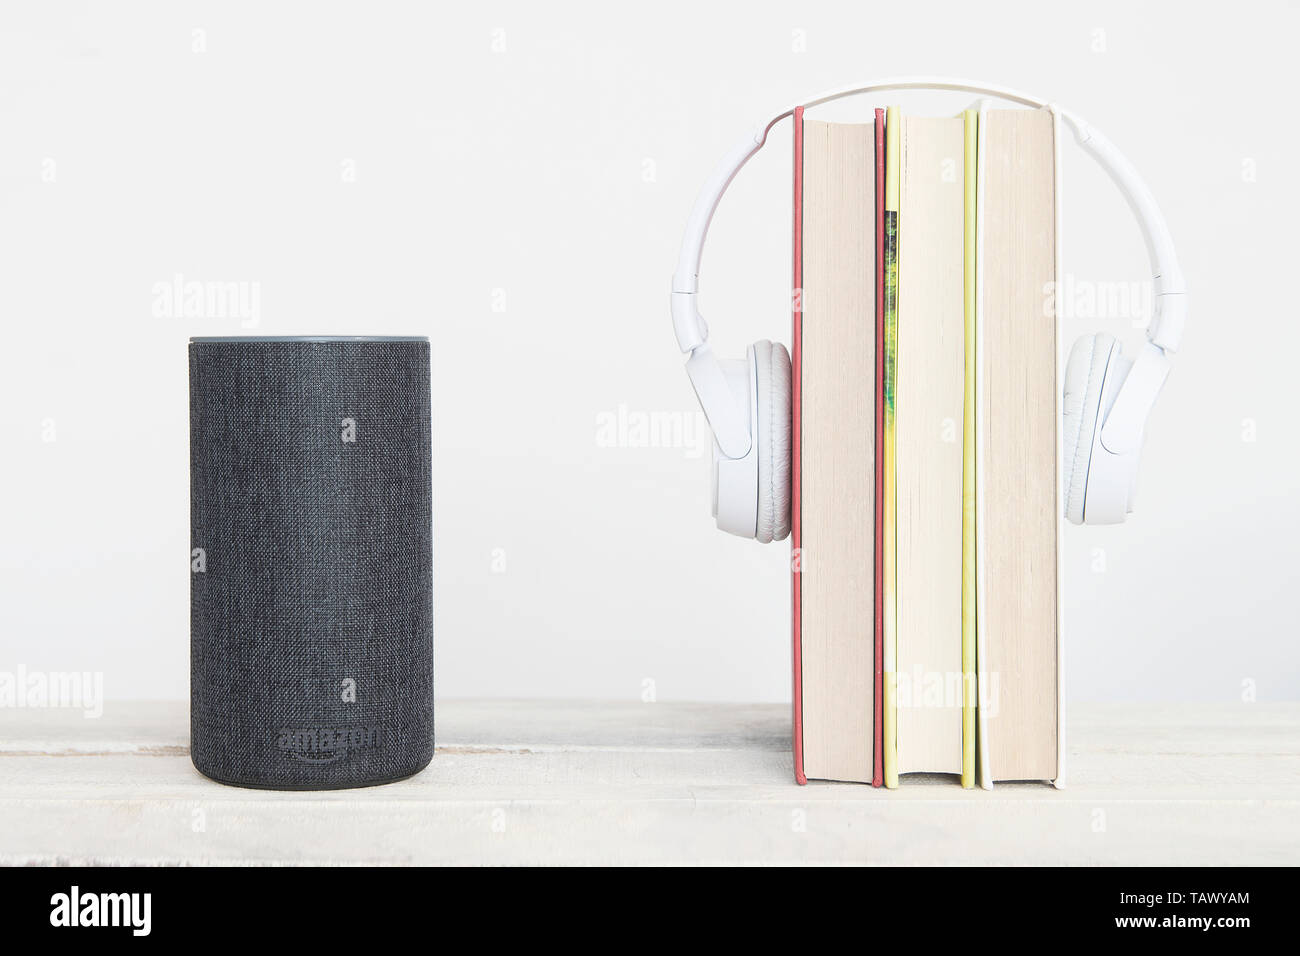 Smart speaker Amazon Alexa dispositivo eco sulla sinistra accanto ad alcuni libri e hearphones contro uno sfondo bianco. Svuotare lo spazio di copia per l'editor di testo Foto Stock